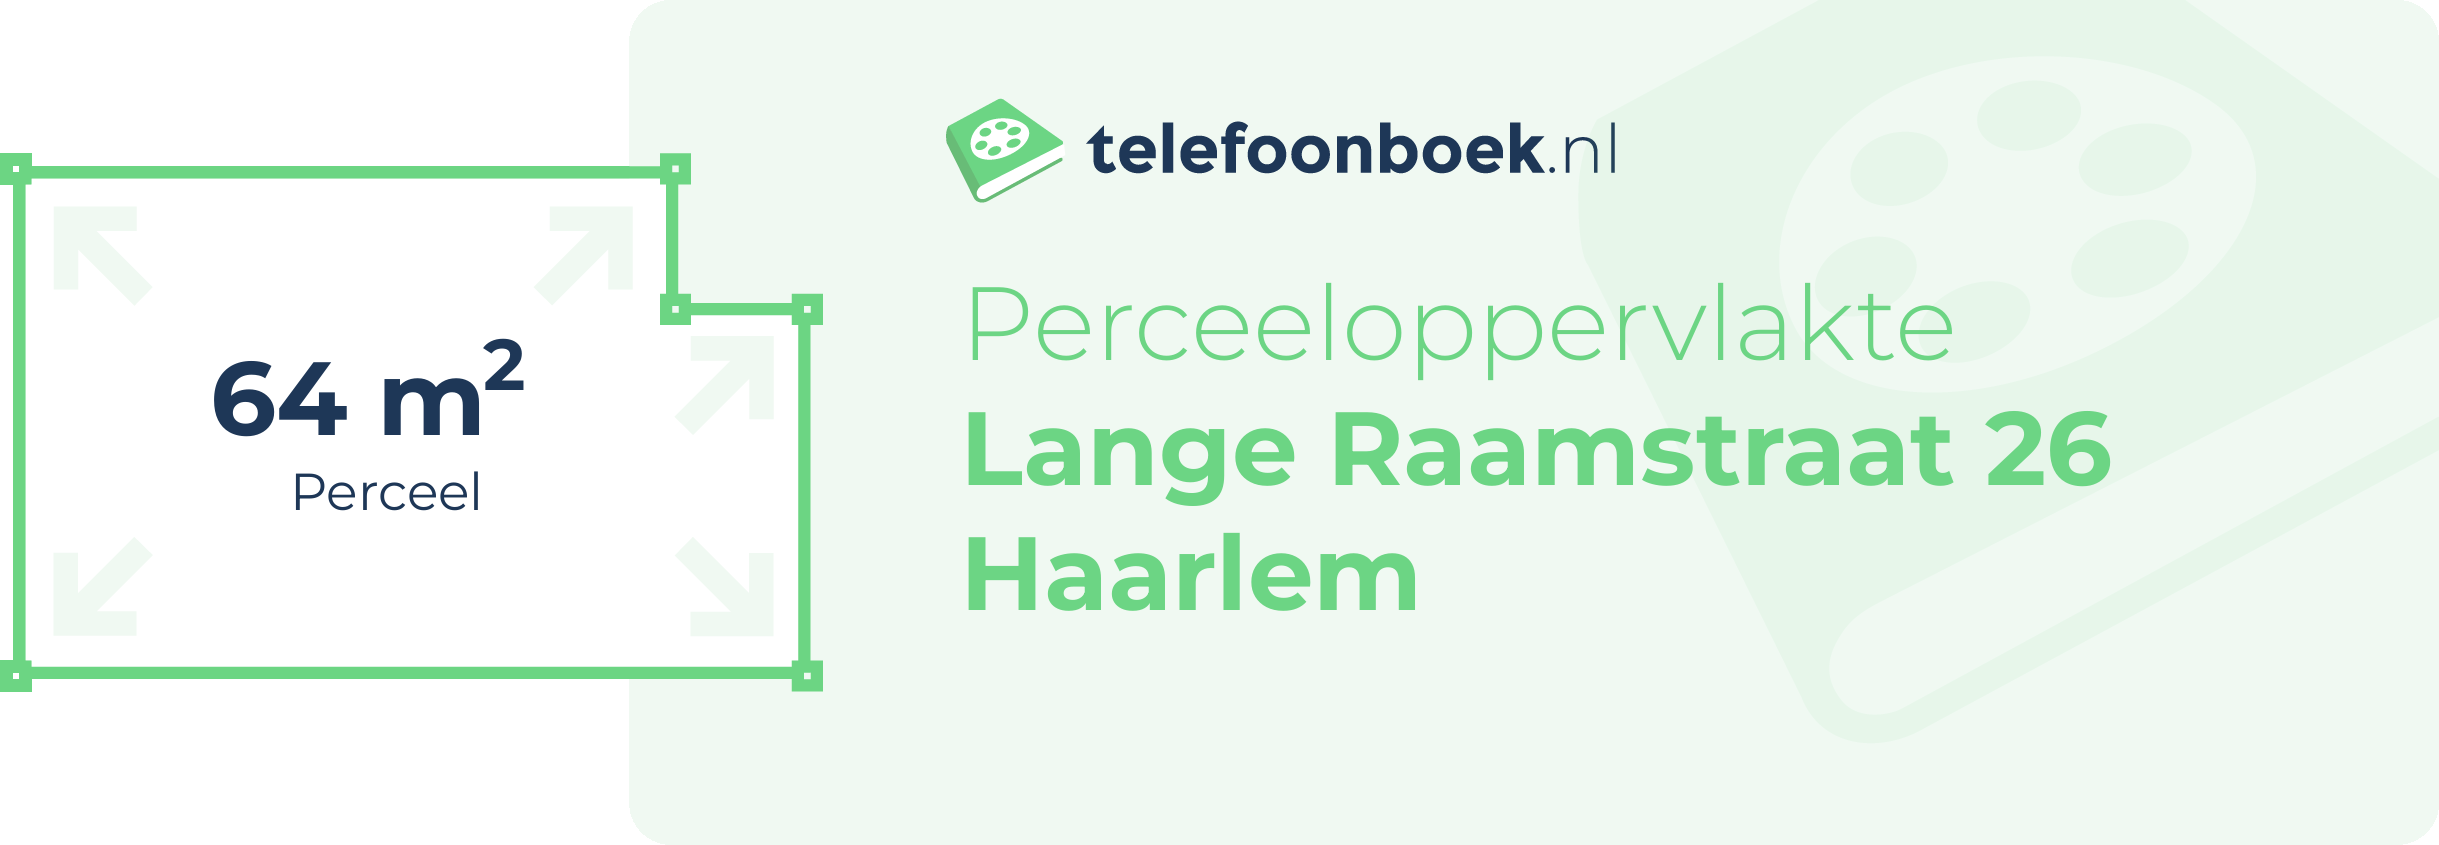 Perceeloppervlakte Lange Raamstraat 26 Haarlem